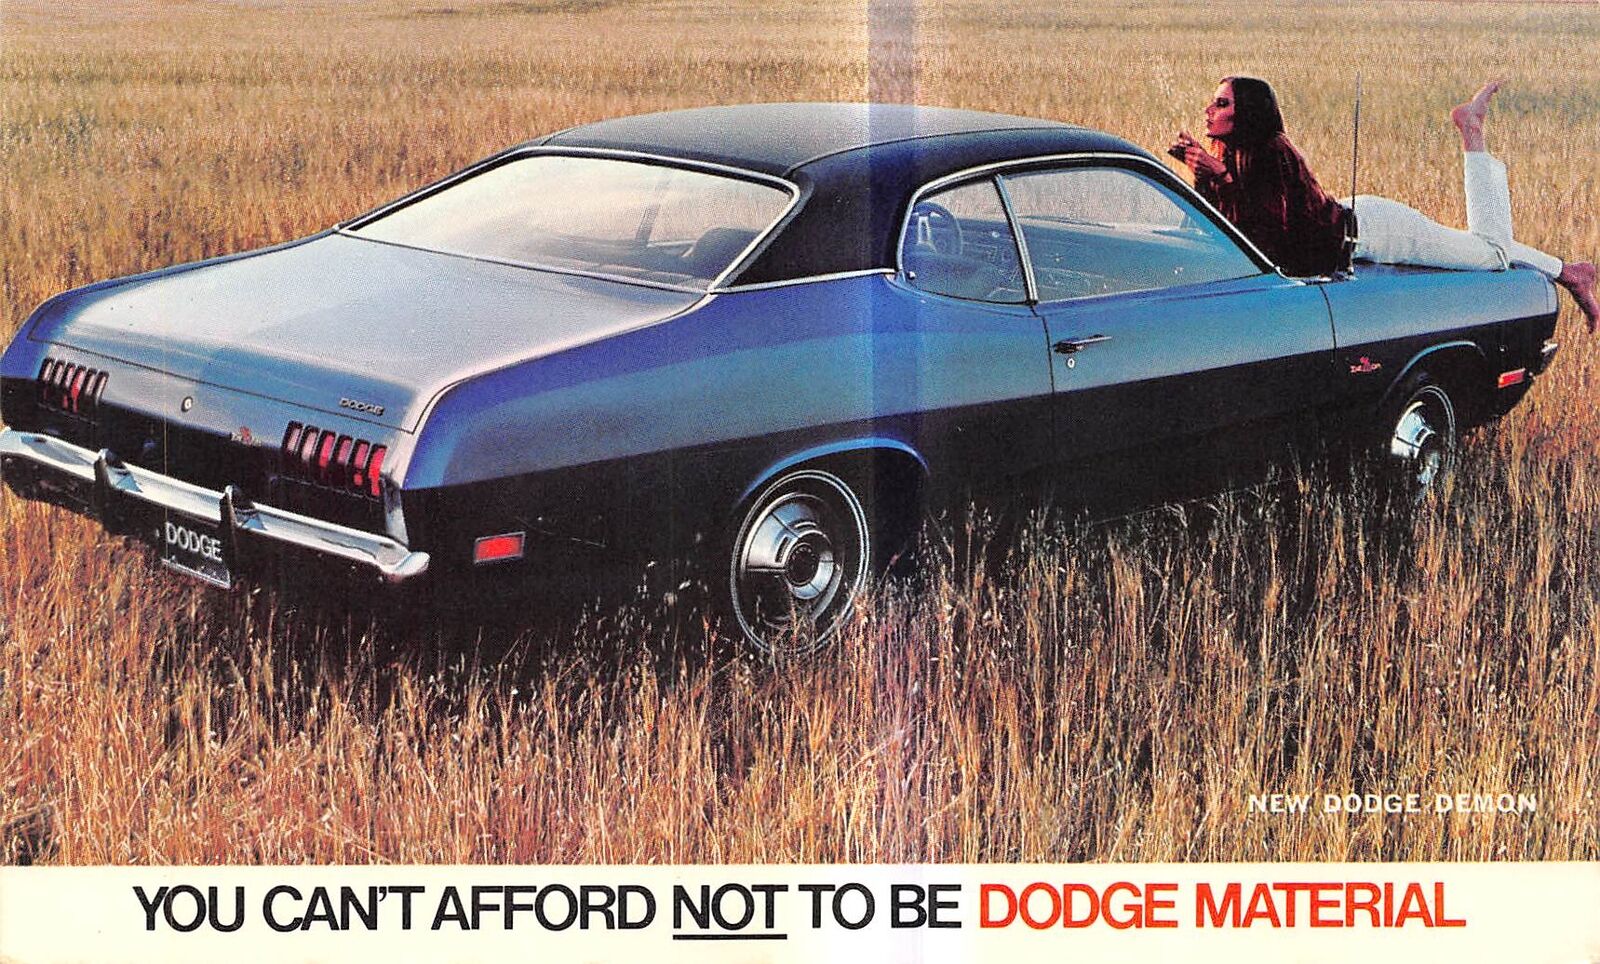 POSTCARD 1971 Dodge Demon car automobile advertisement